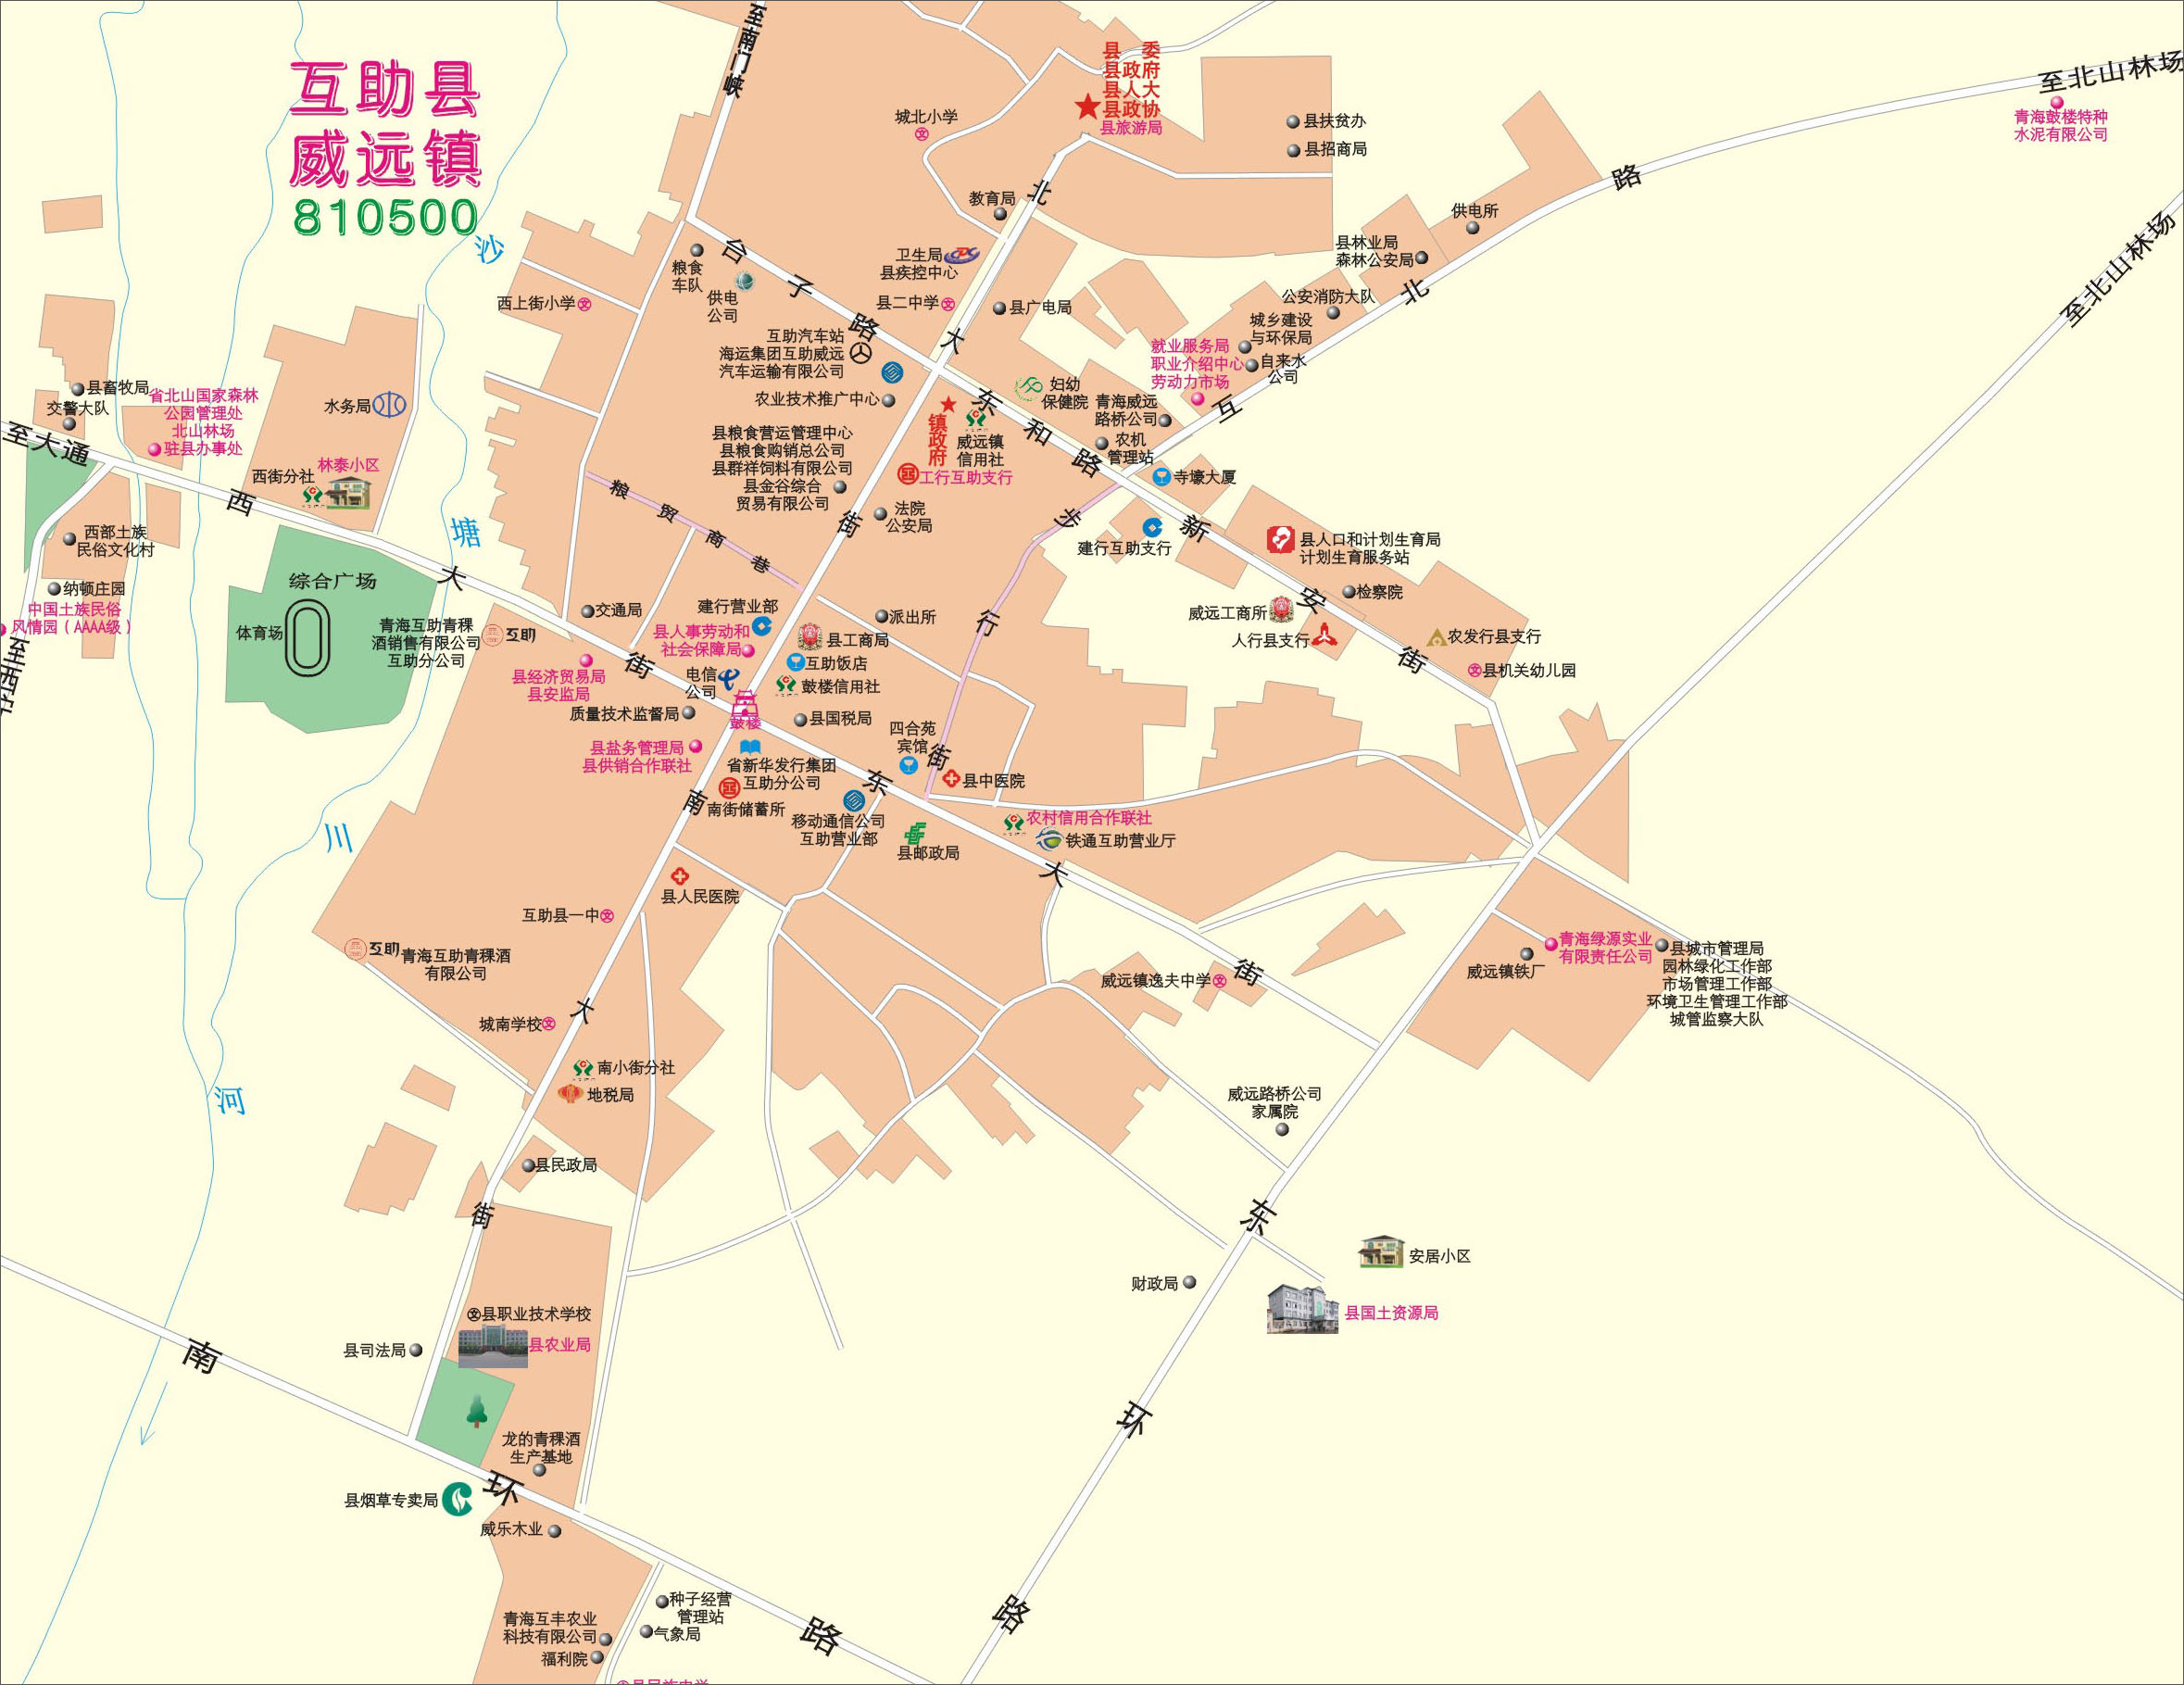 地图 青海 海东地区  互助县街区图  栏目导航: 西宁市  海东